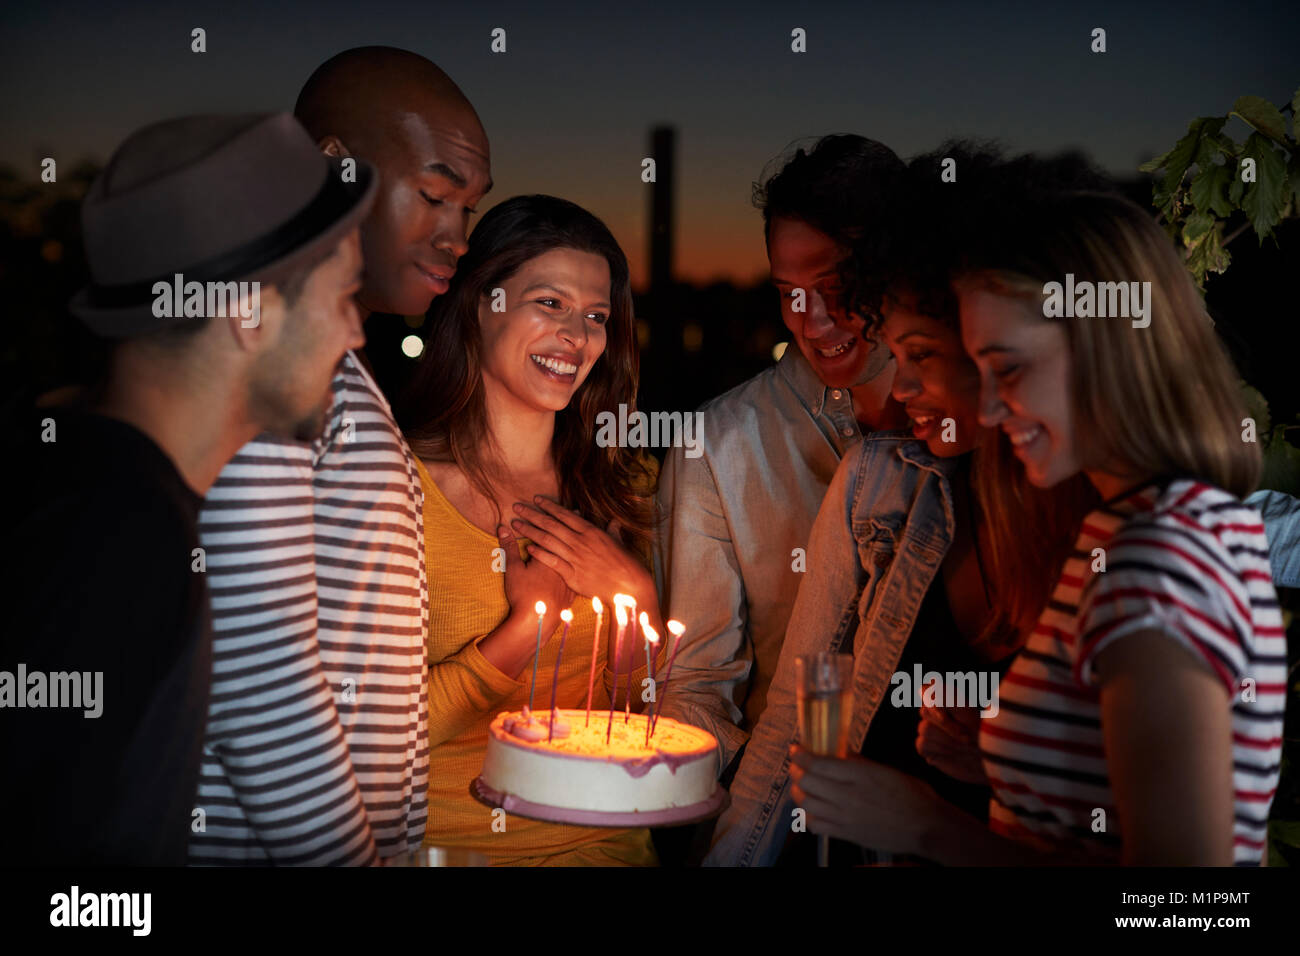 Les jeunes adultes de célébrer avec un gâteau d'anniversaire sur un toit Banque D'Images